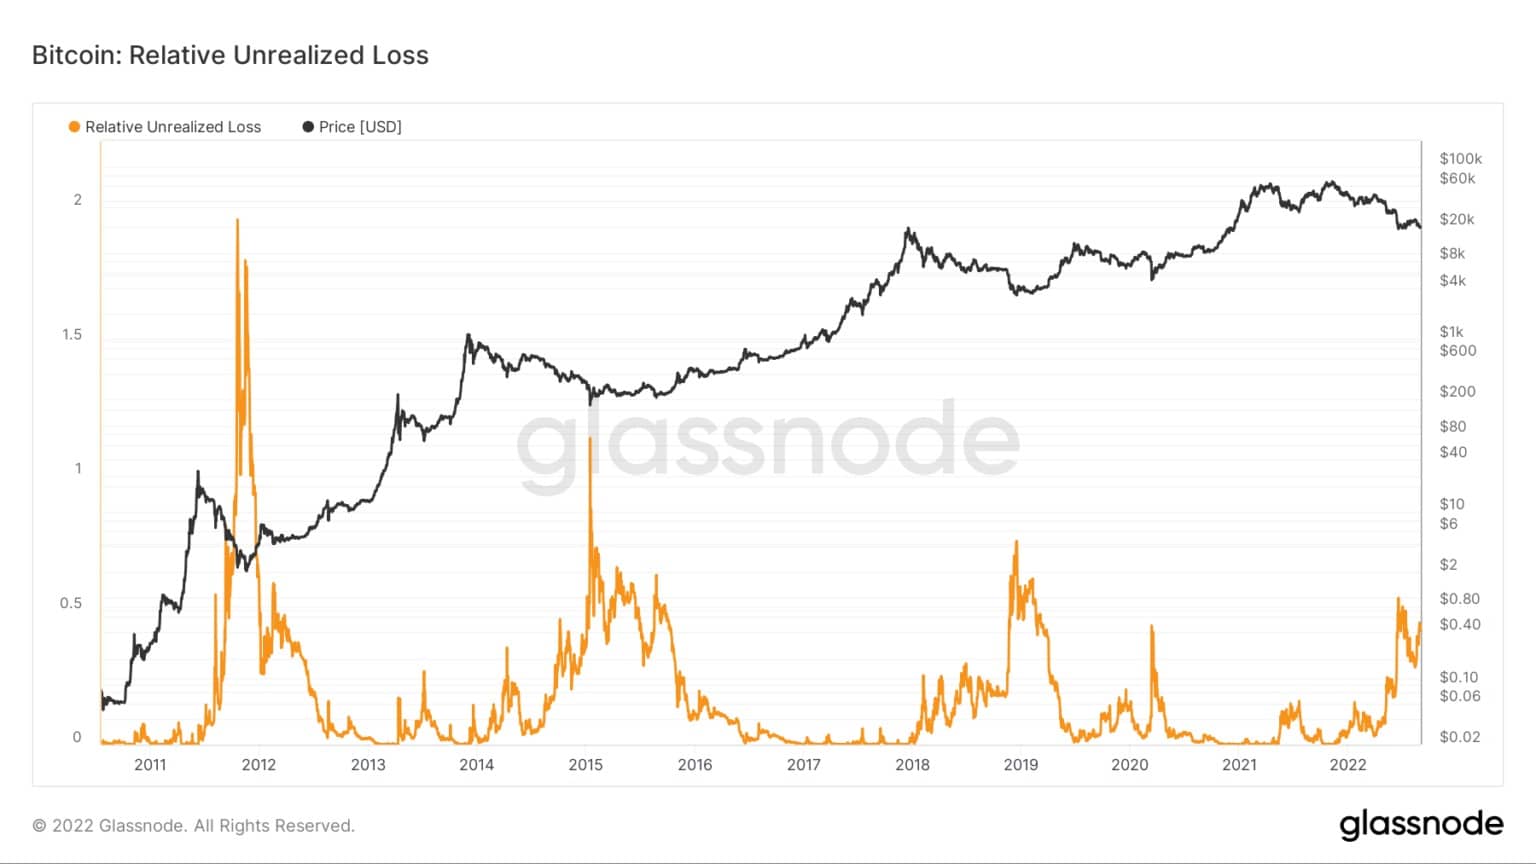 Graf znázorňující relativní nerealizovanou ztrátu bitcoinu v letech 2022 až 2022 (zdroj: Glassnode)